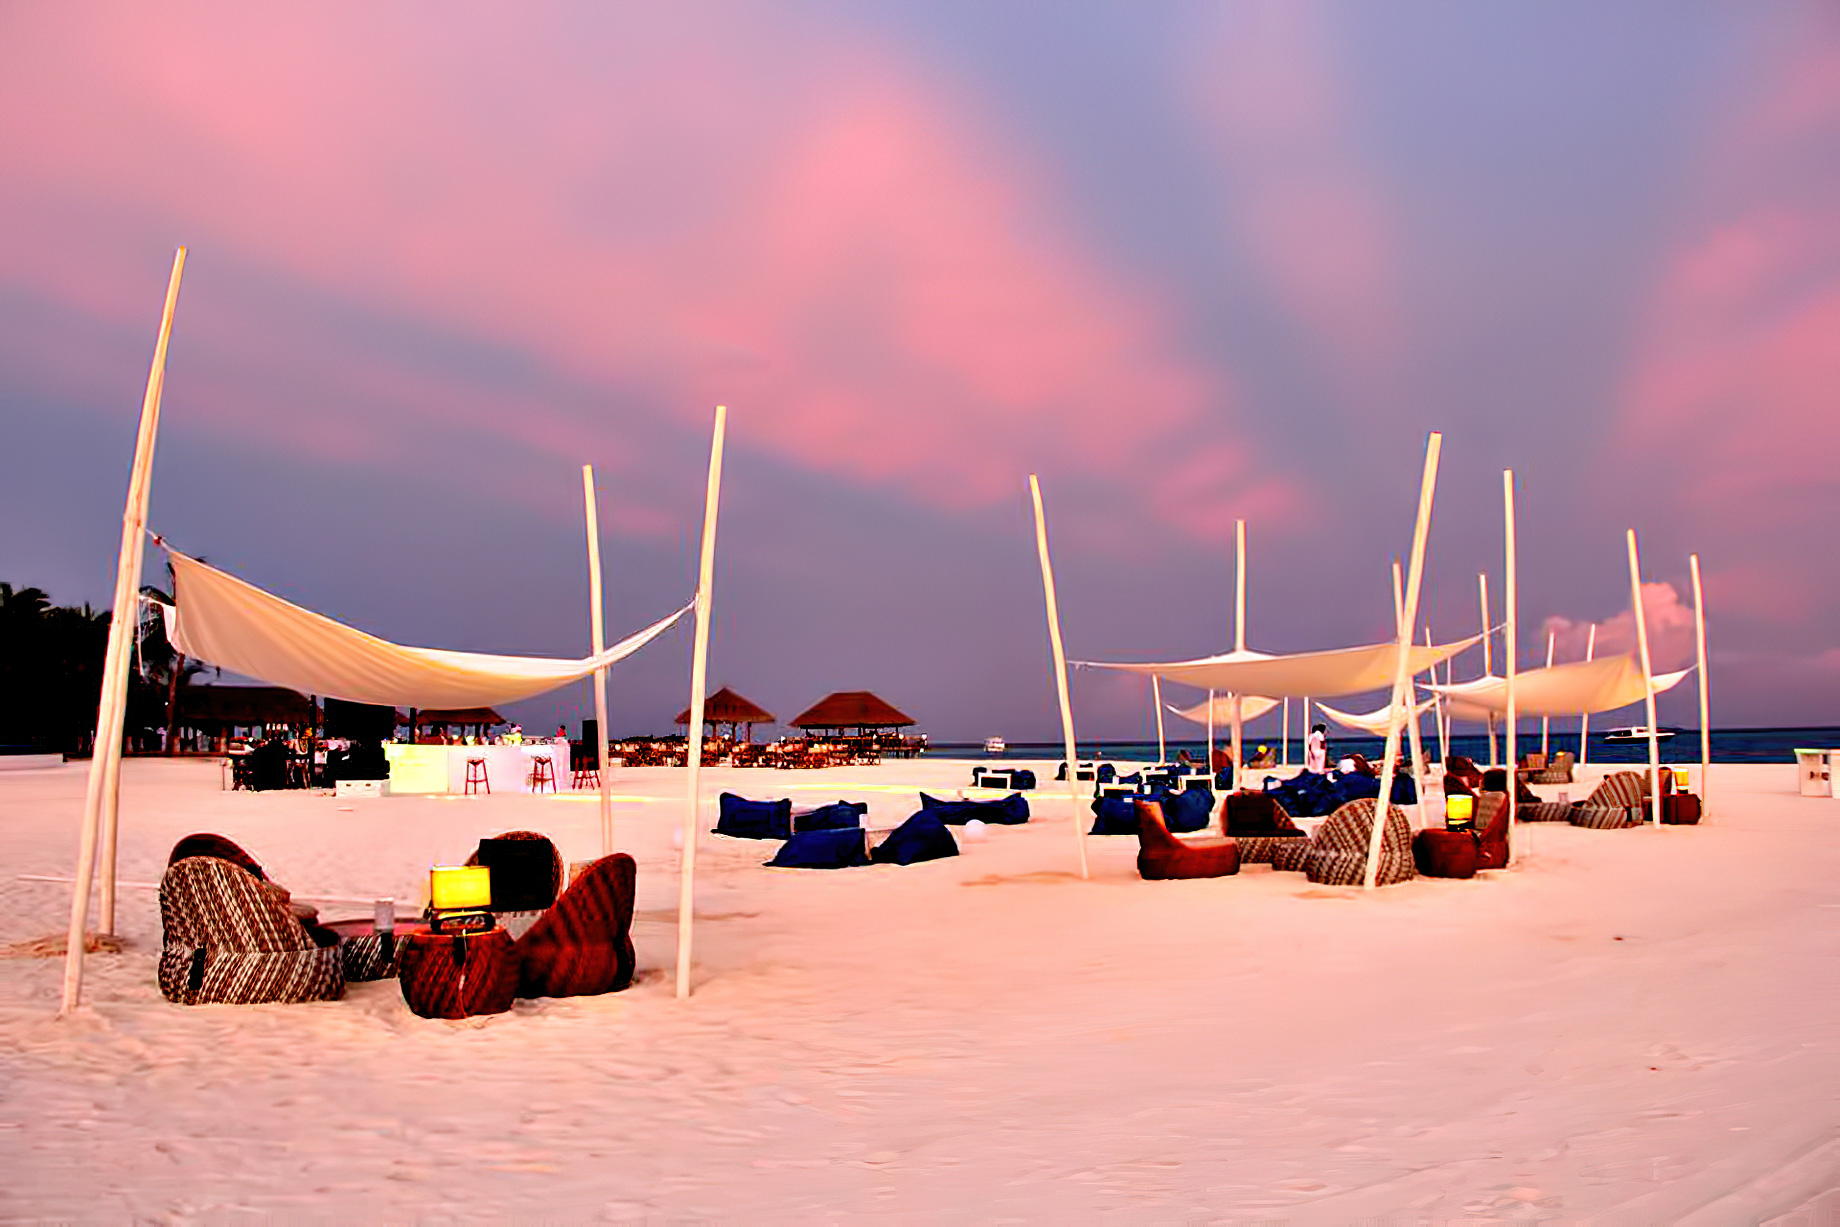 Velassaru Maldives Resort – South Male Atoll, Maldives – Beach Sunset Sand Chairs